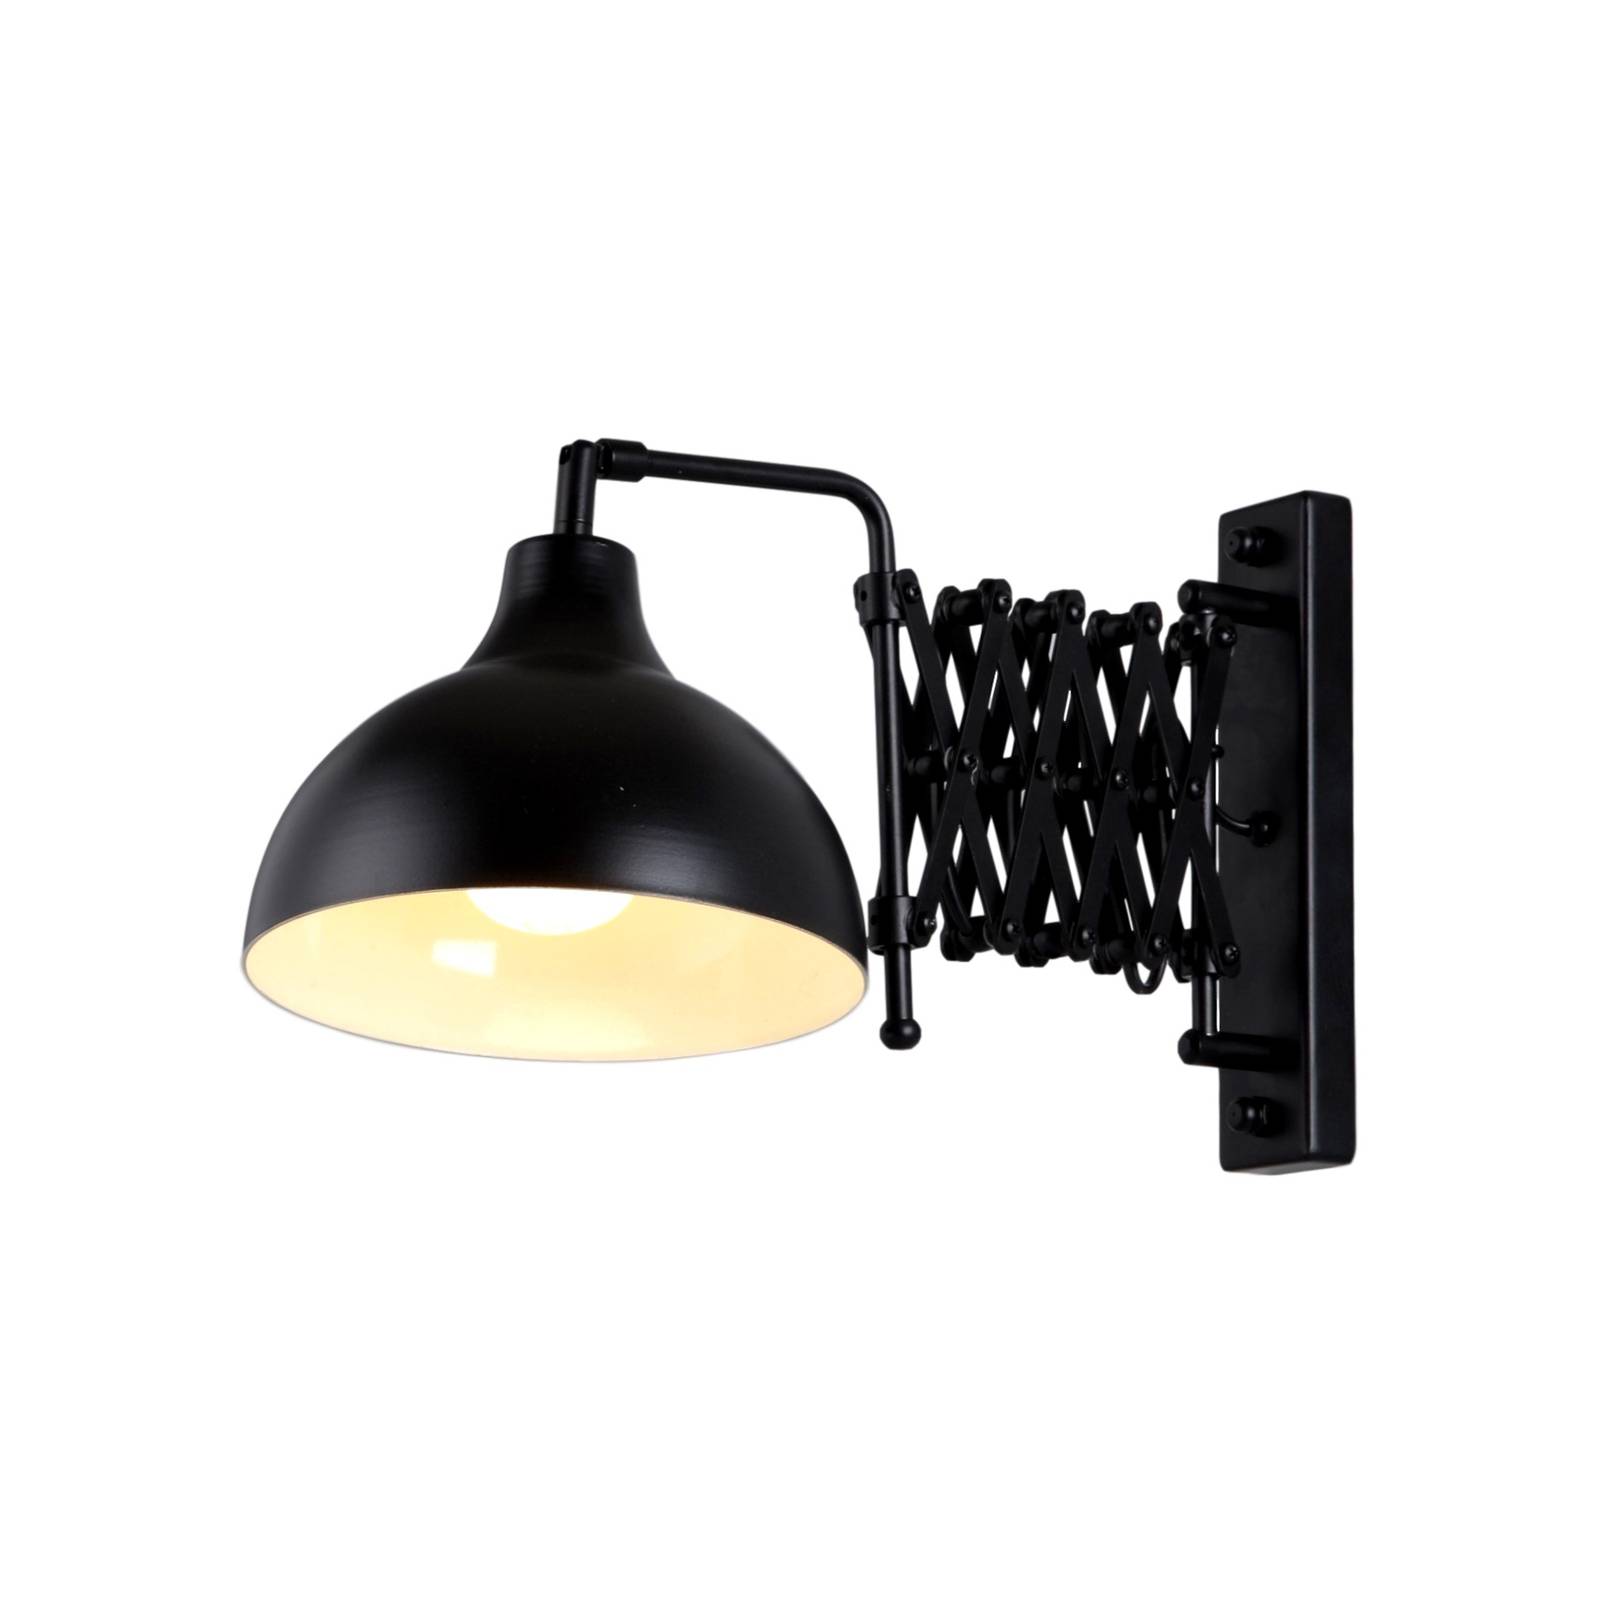 Avonni fali világítás hap-9082-bsy ollós karral, fekete